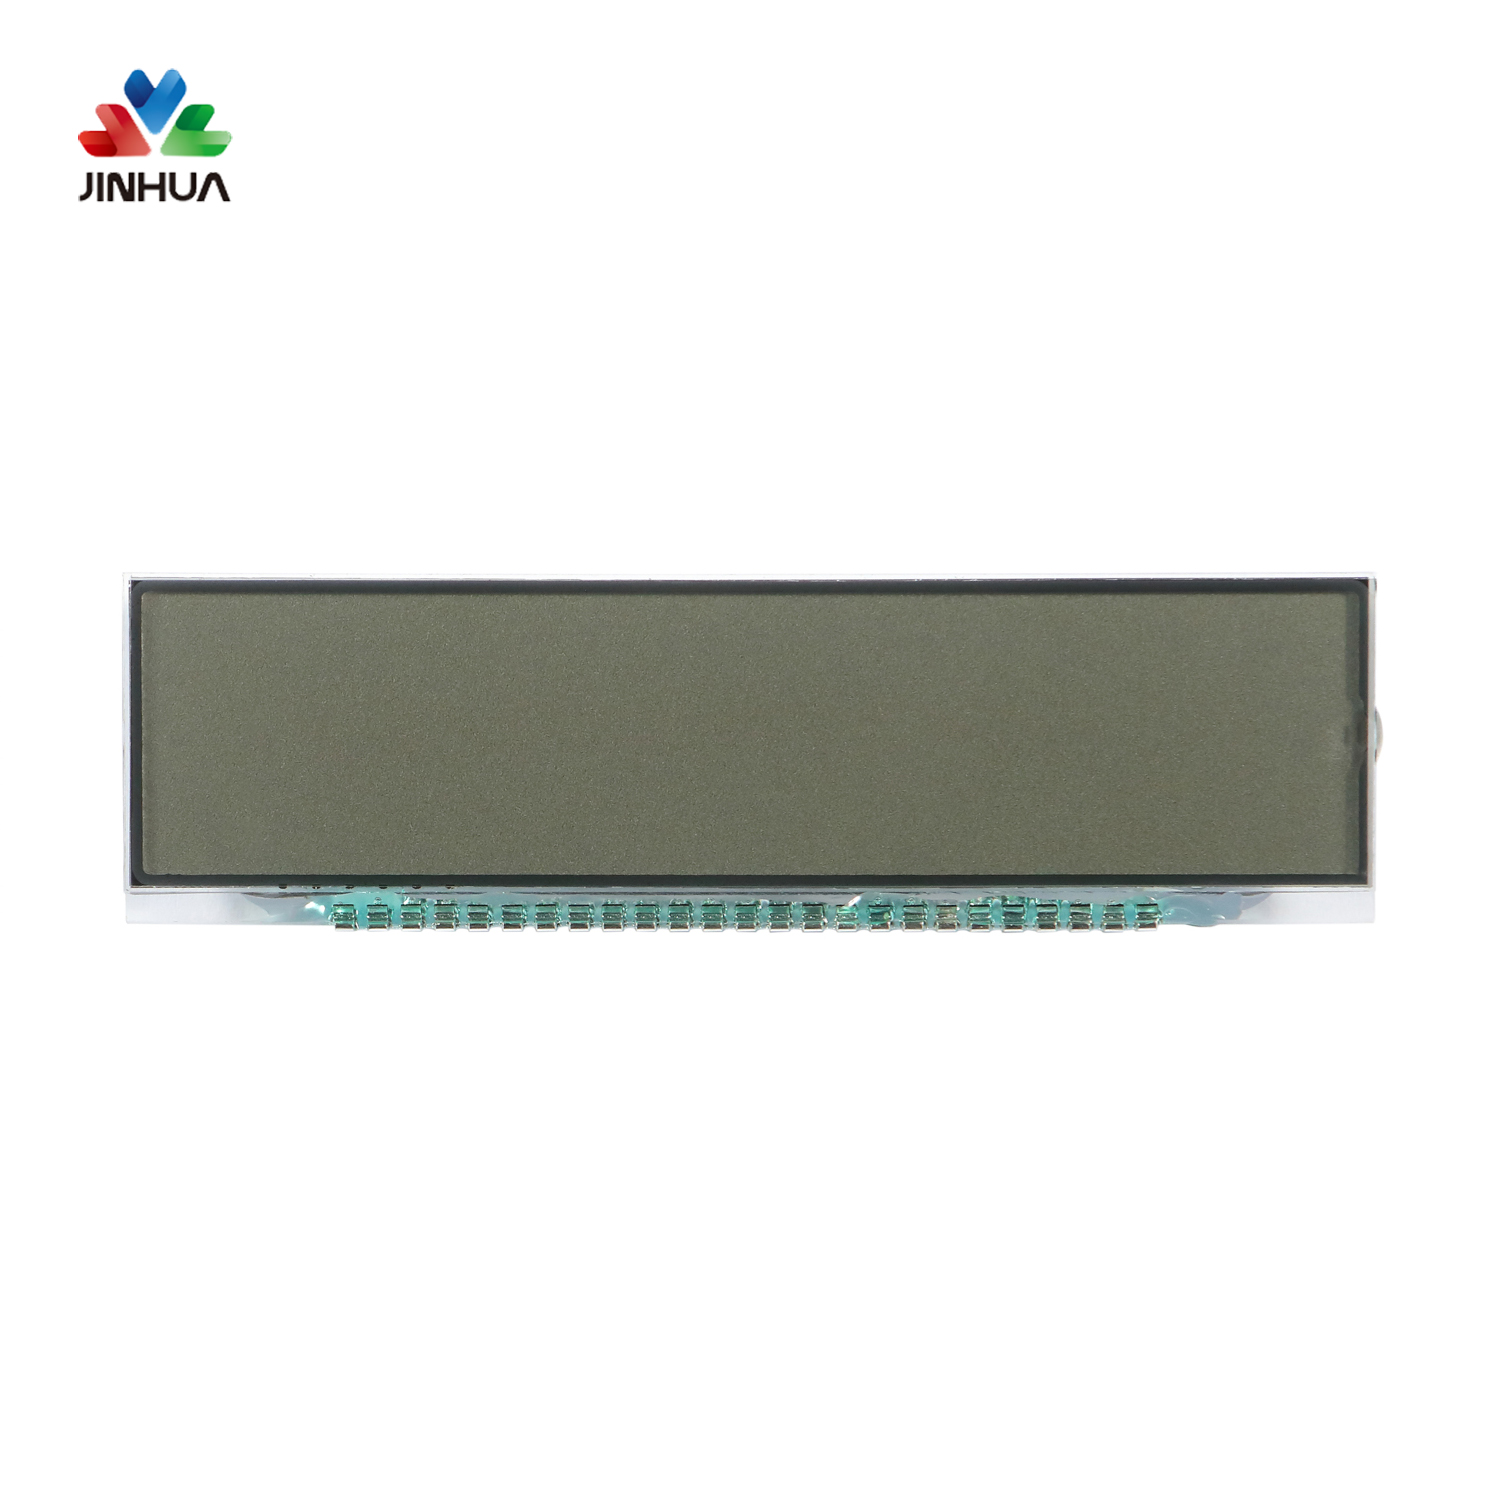 Benutzerdefinierte Stifte Positive reflektierende TN-Segment-LCD-Anzeige für Gaszähler